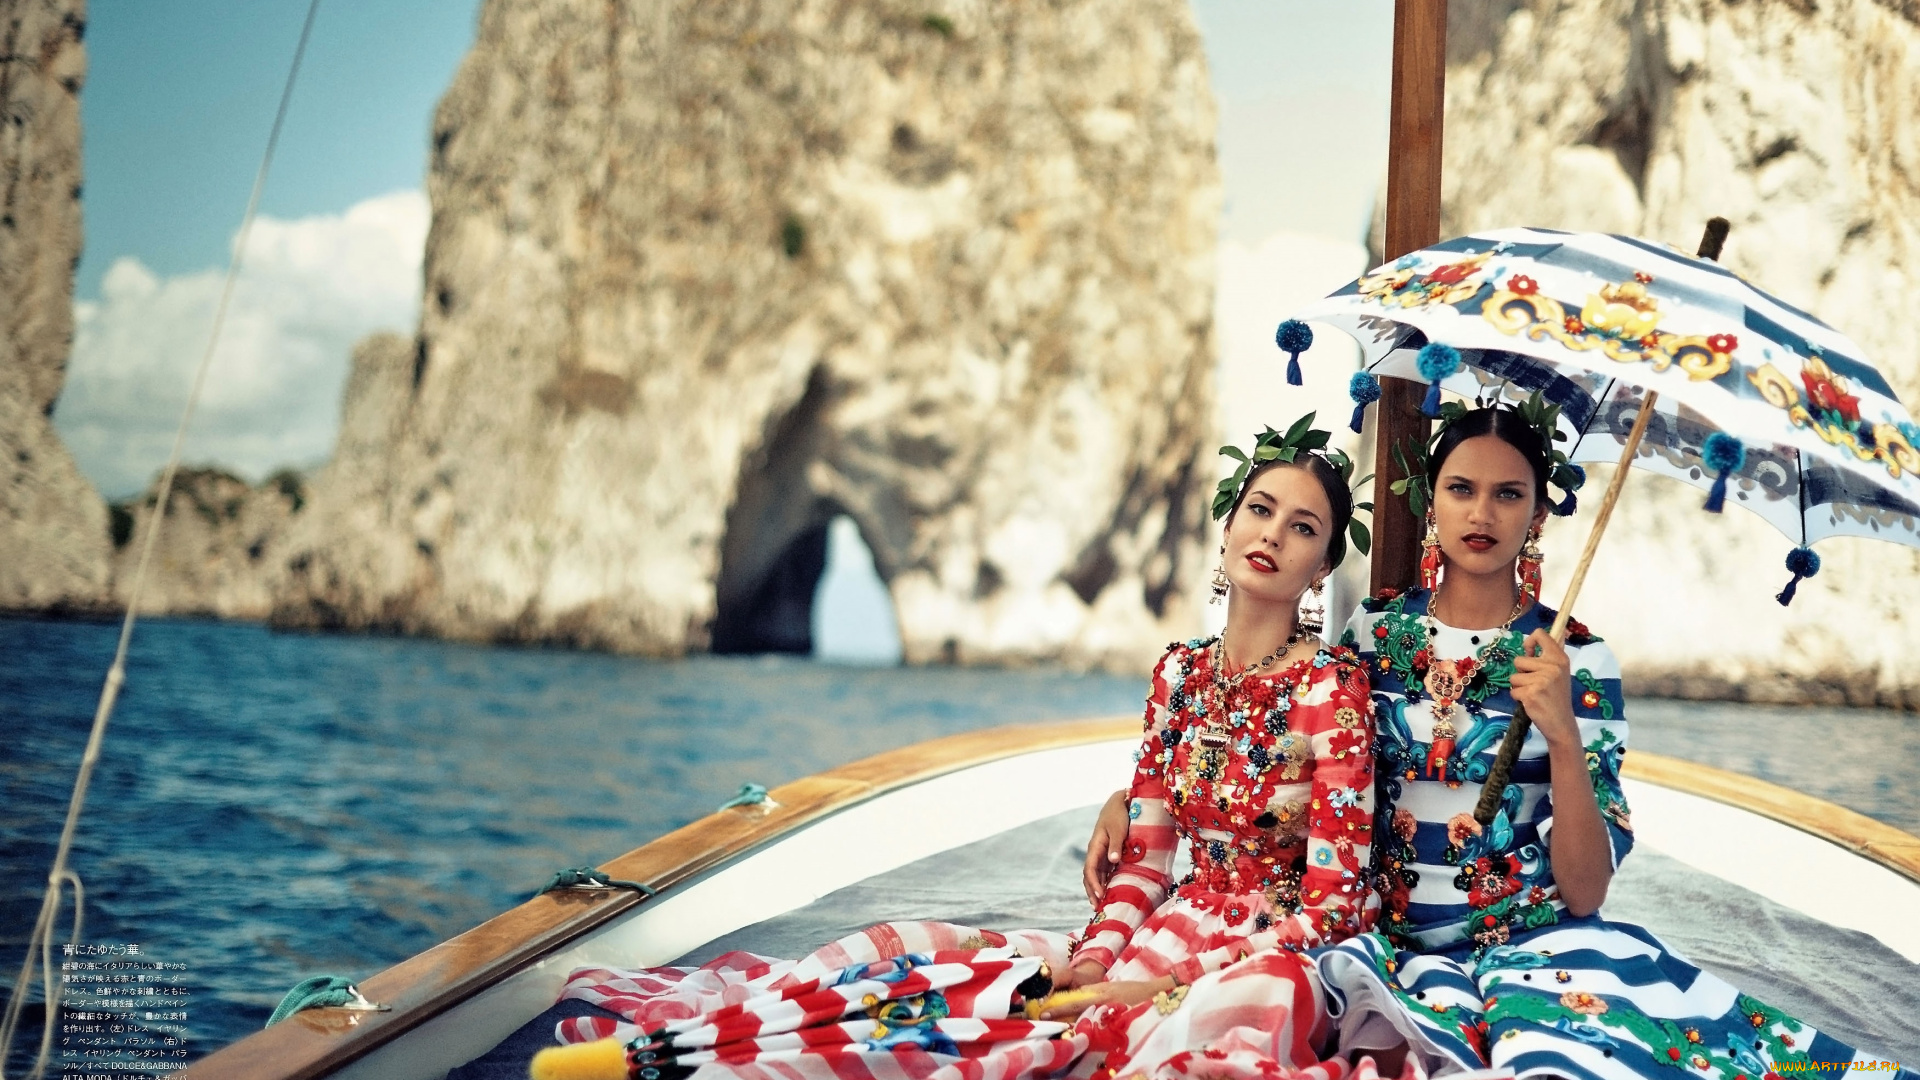 девушки, -, группа, девушек, наряды, украшения, лодка, зонт, море, скалы